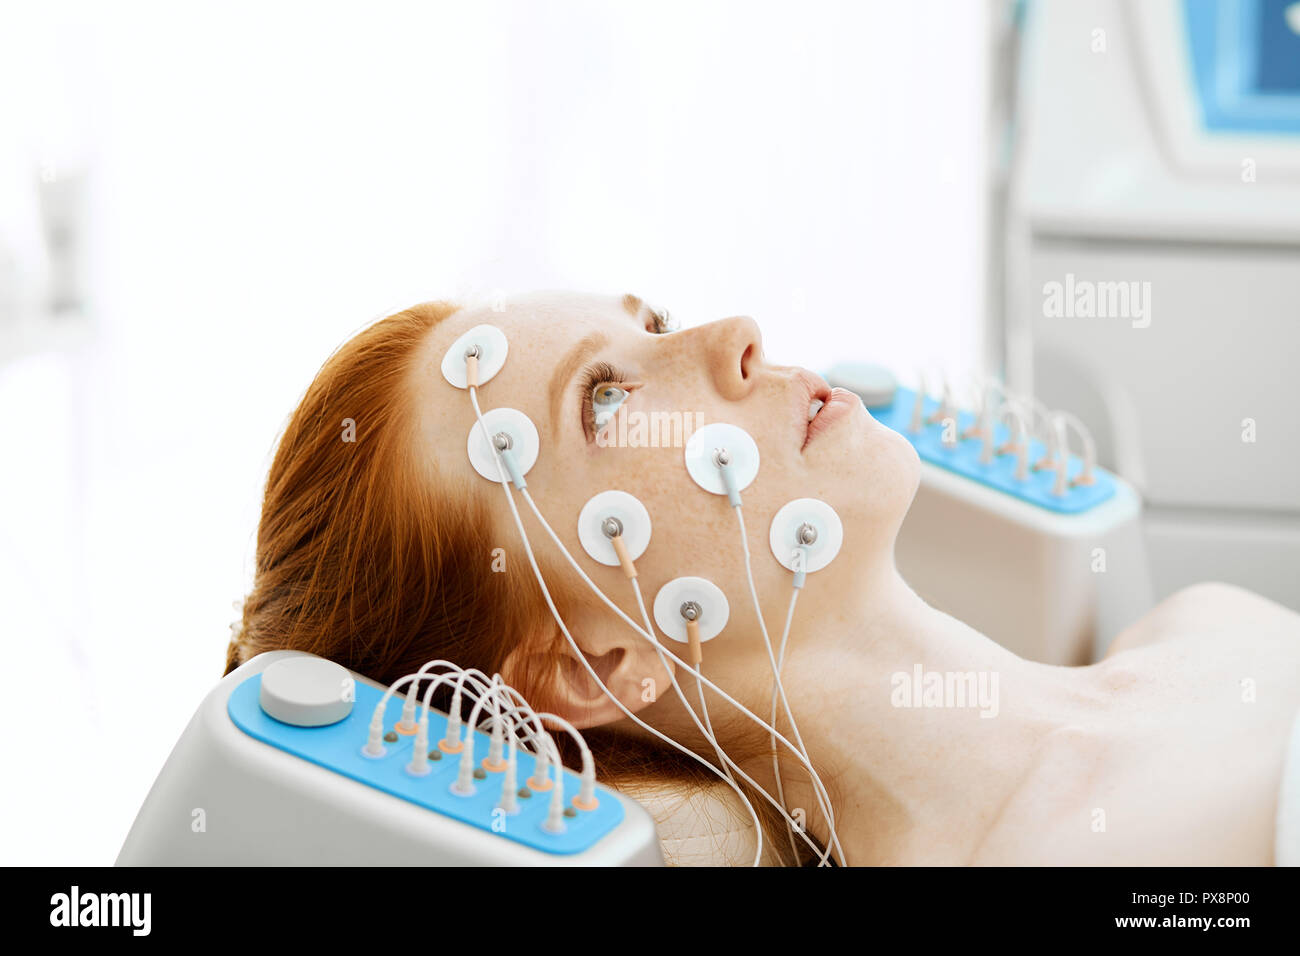 Paciente con electrodo, o terapia de estimulación eléctrica